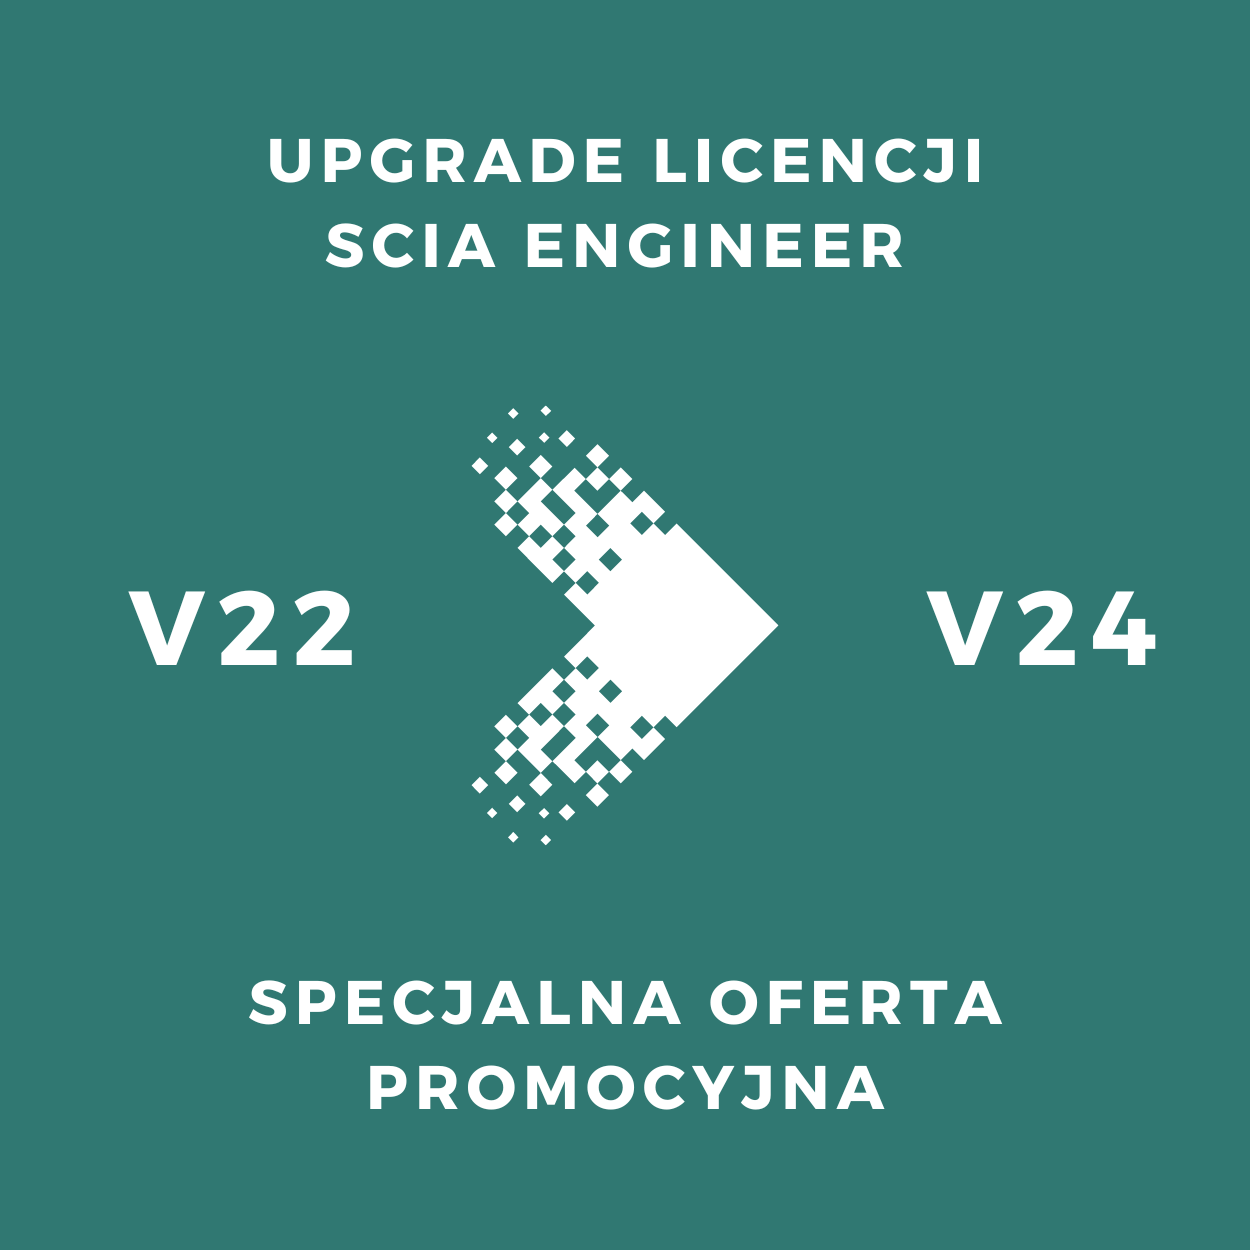 Promocja na upgrade licencji SCIA Engineer z V22 do V24